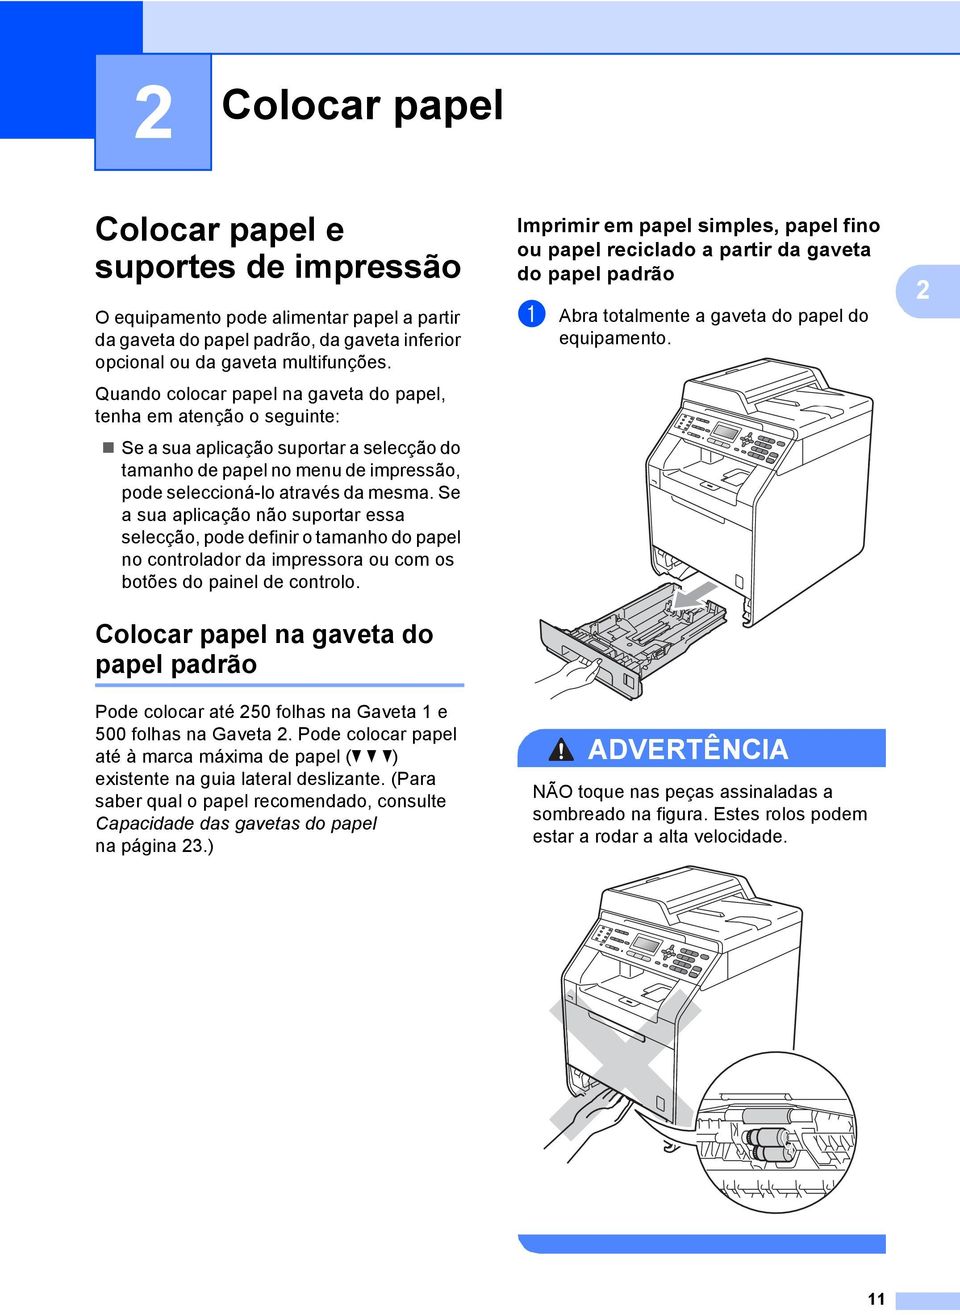 Se a sua aplicação não suportar essa selecção, pode definir o tamanho do papel no controlador da impressora ou com os botões do painel de controlo.